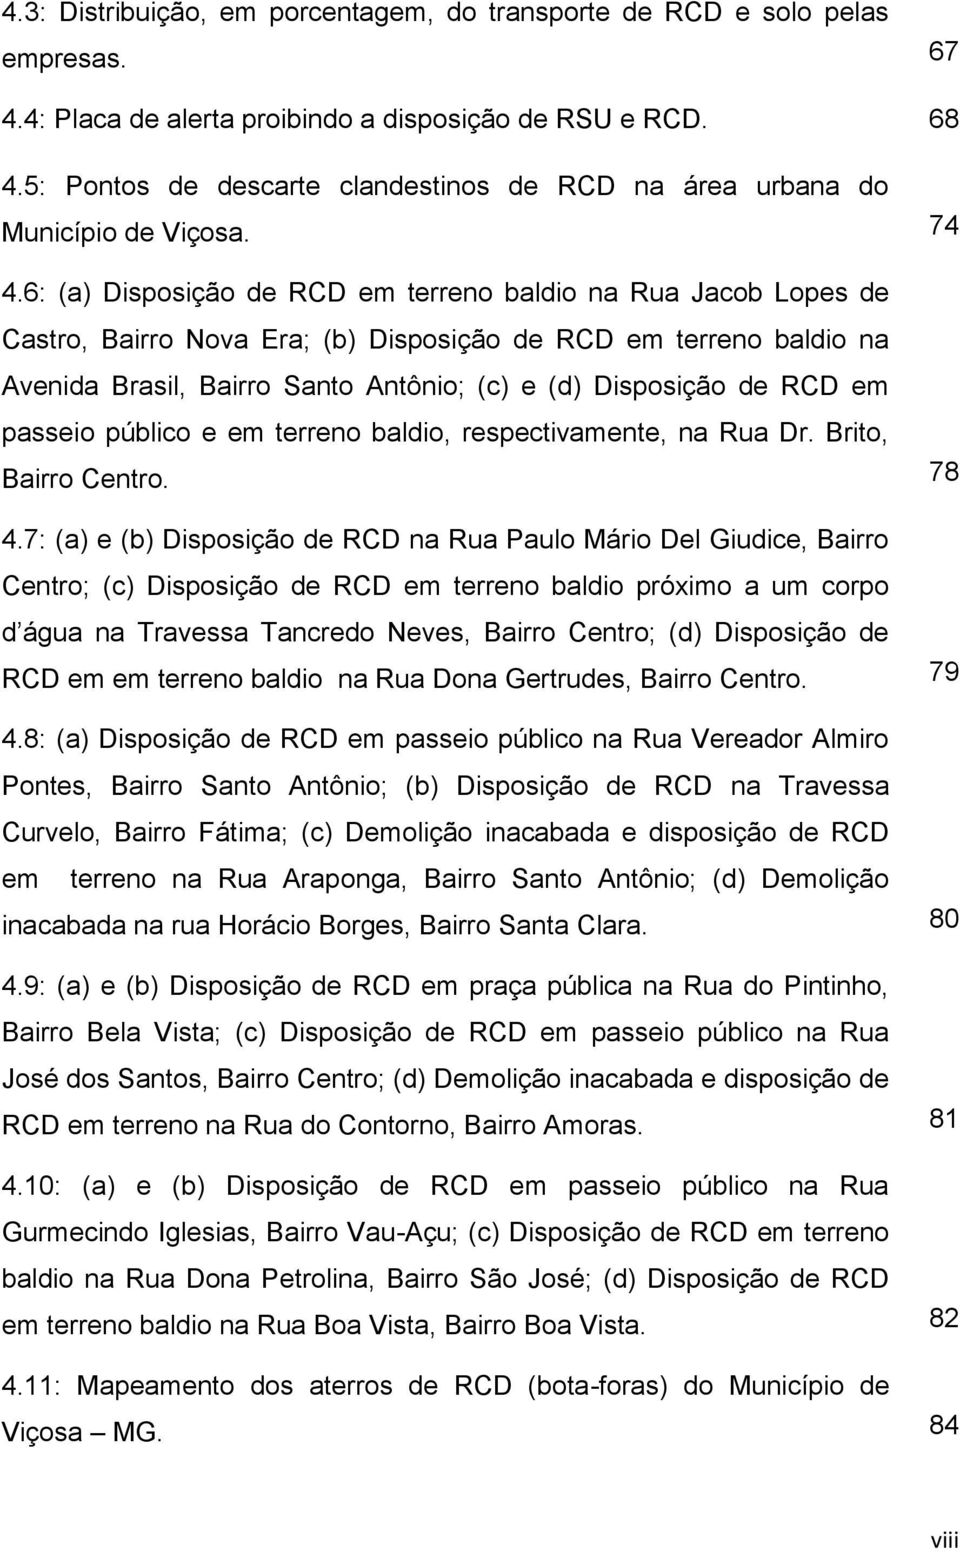 6: (a) Disposição de RCD em terreno baldio na Rua Jacob Lopes de Castro, Bairro Nova Era; (b) Disposição de RCD em terreno baldio na Avenida Brasil, Bairro Santo Antônio; (c) e (d) Disposição de RCD